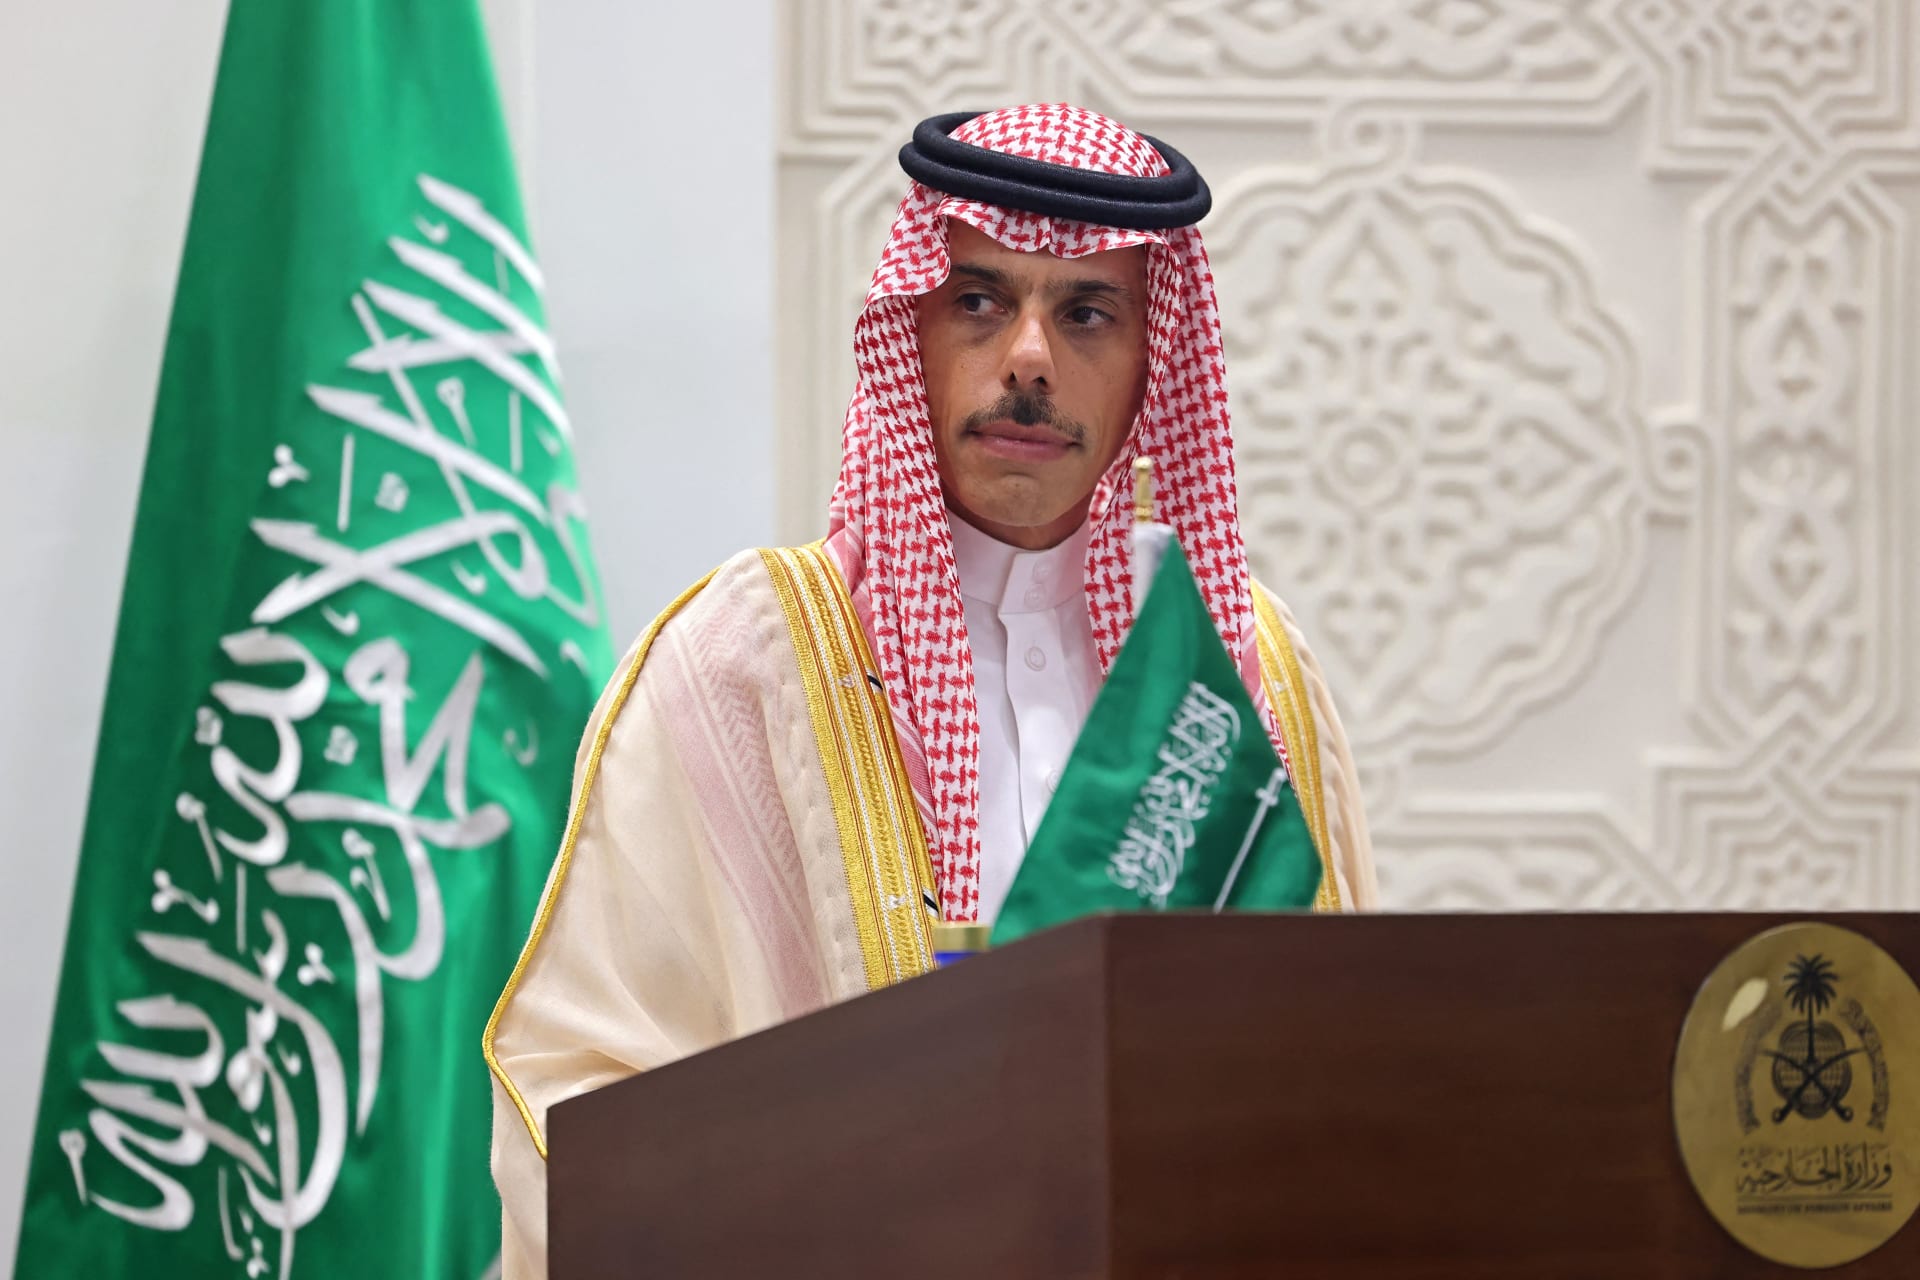 أسلوب تعامل وزير خارجية السعودية مع وصف "الخليج الفارسي" بكلمة عبداللهيان يثير تفاعلا